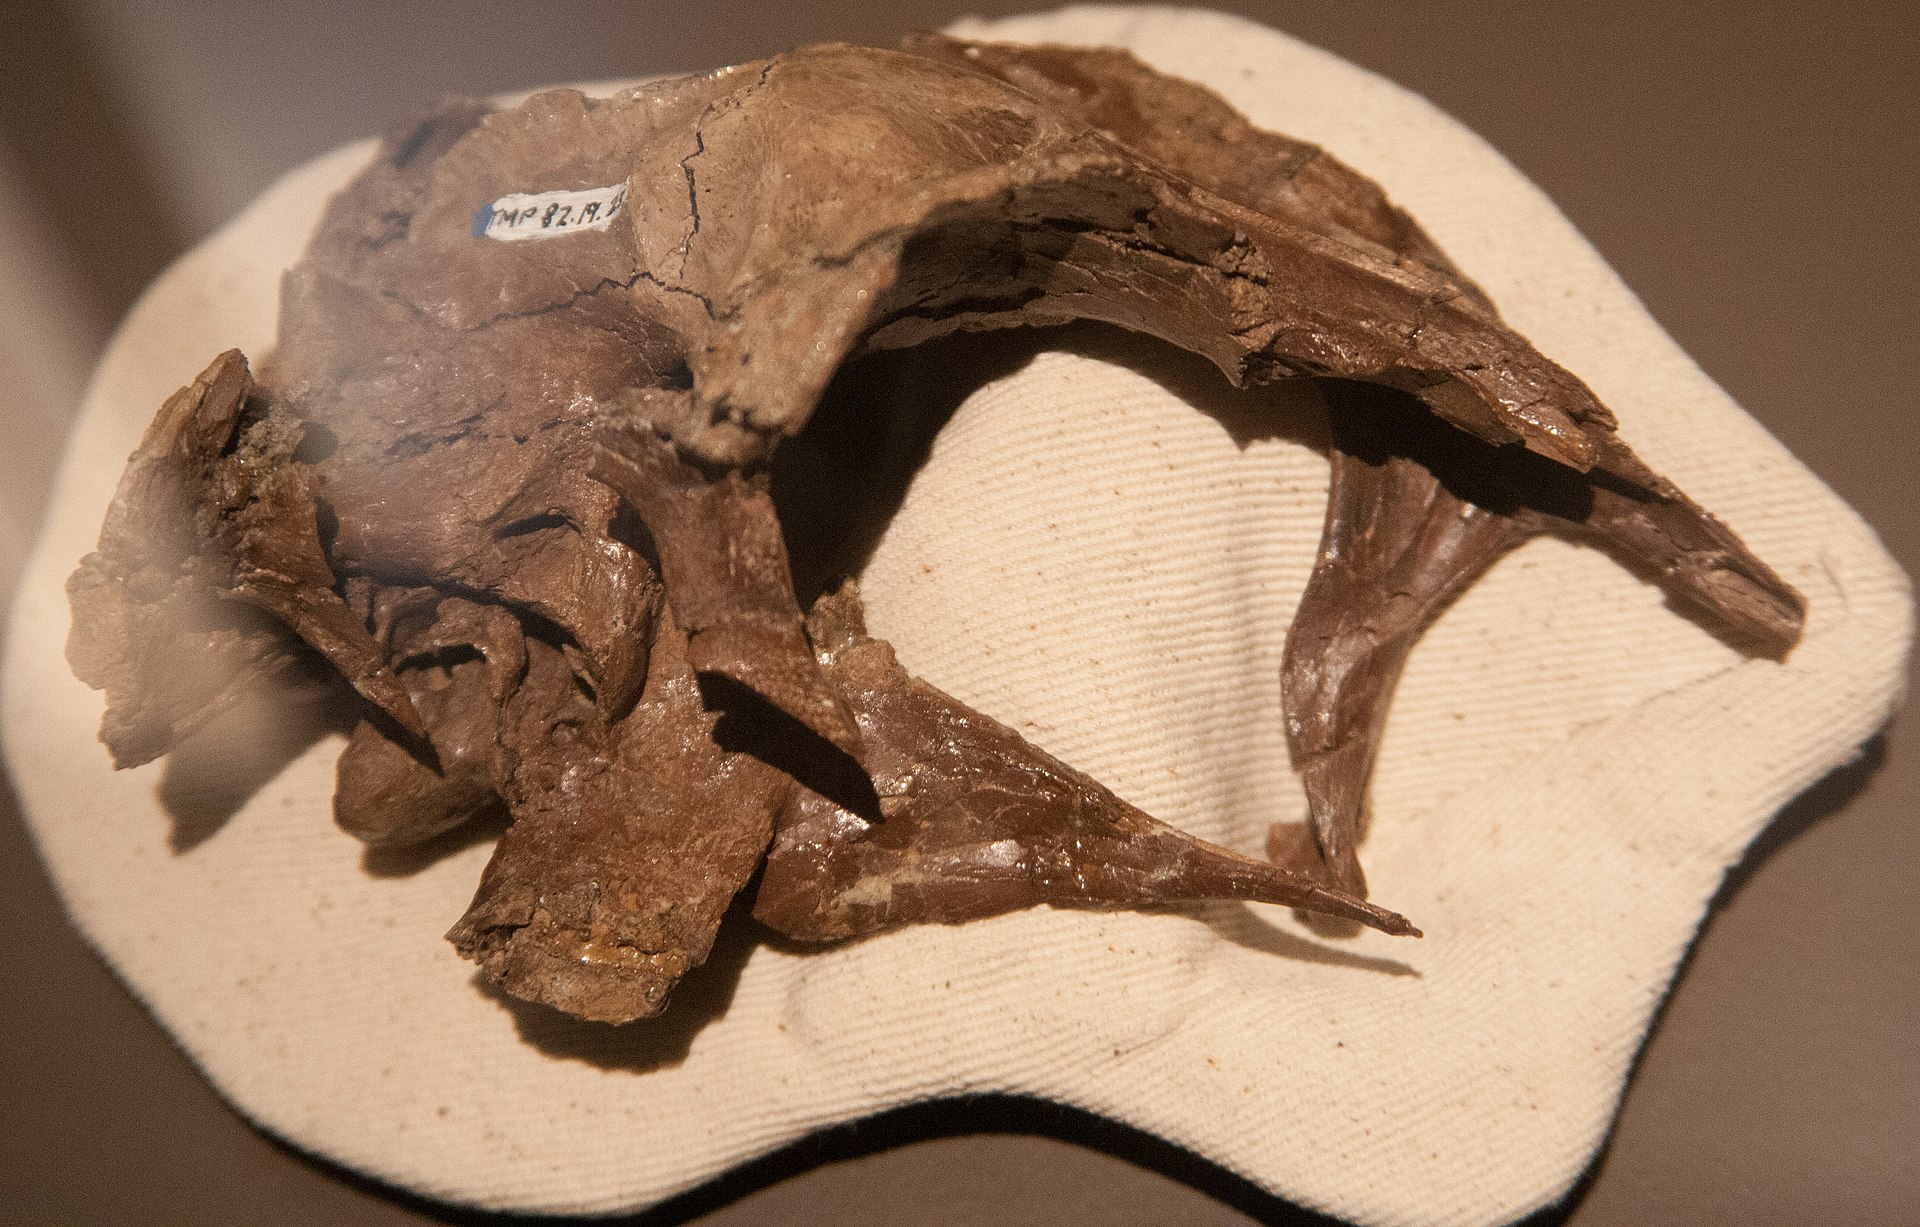 Právě nápadně velká mozkovna dinosaura, popsaného původně jako Stenonychosaurus inequalis (dnes Latenivenatrix mcmasterae) byla jedním z podnětů k vážně míněným spekulacím o možném vzniku sapientních bytostí, vzešlých vývojem z druhohorních teropodní